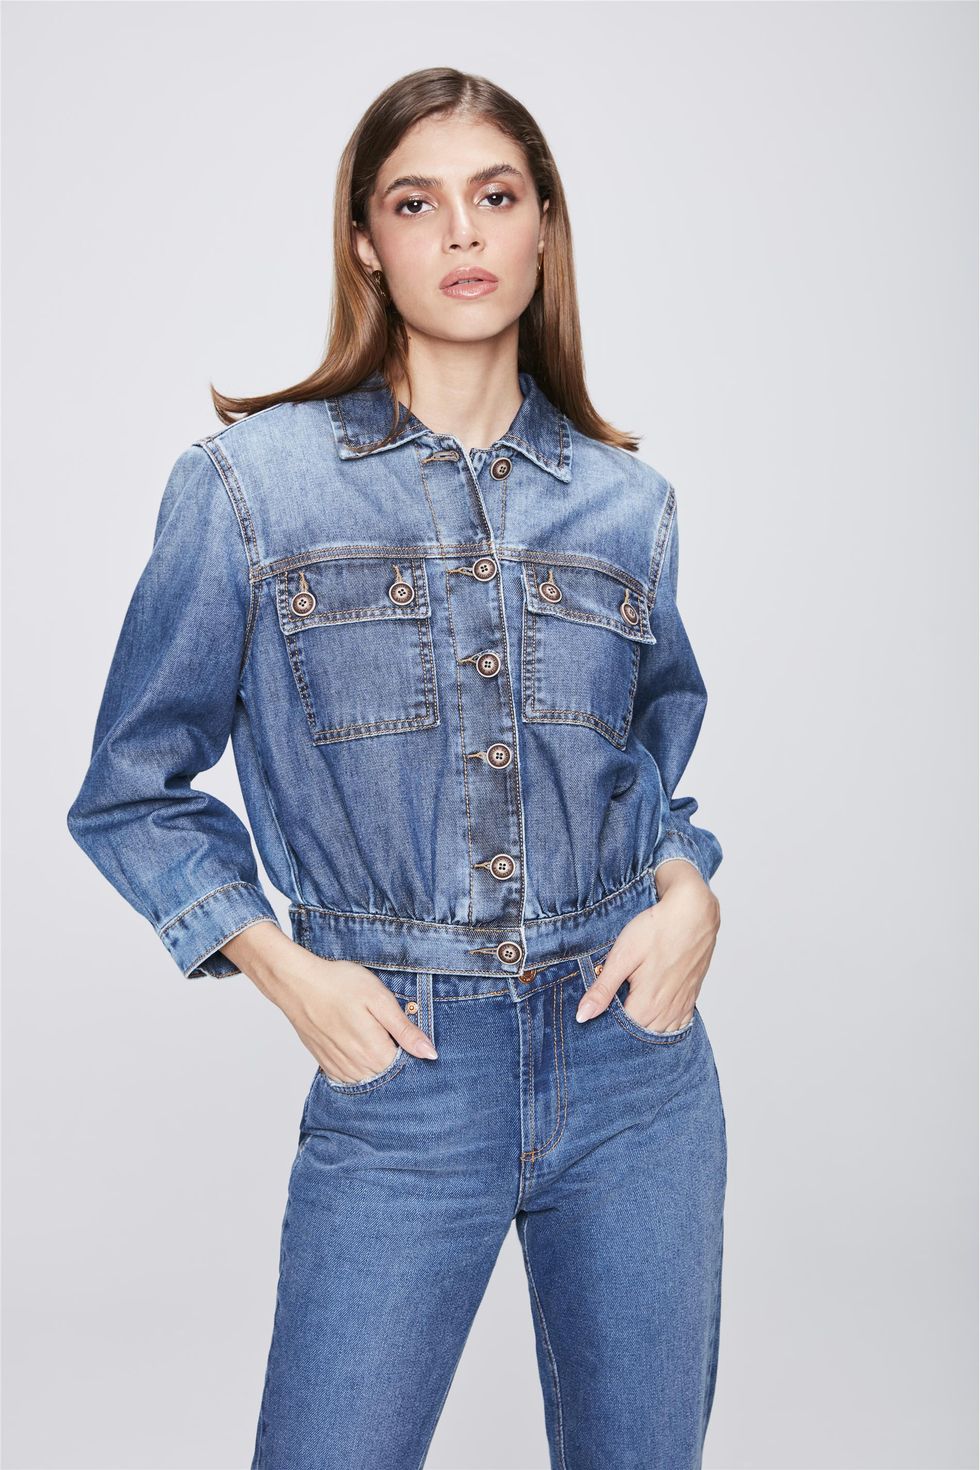 imagens de jaquetas jeans femininas